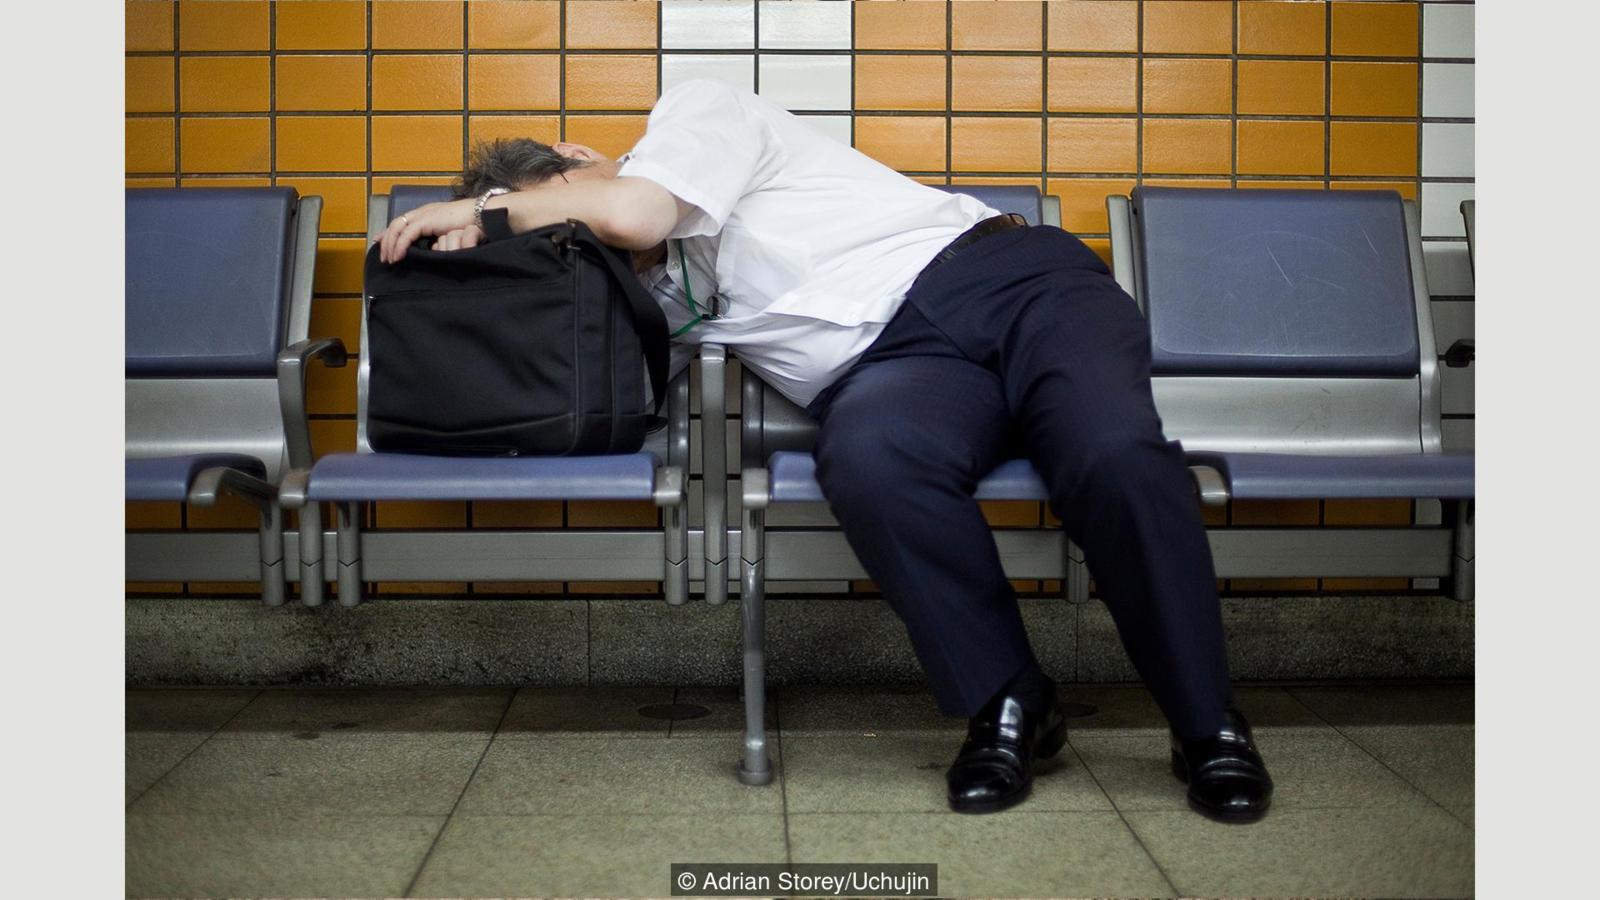 Японская культура сна на работе время, спать, работе, инэмури, можете, любом, когда, японцев, транспорте, постели, можно, значит, настолько, засыпали, Штегер, очень, должны, может, занятий, странах